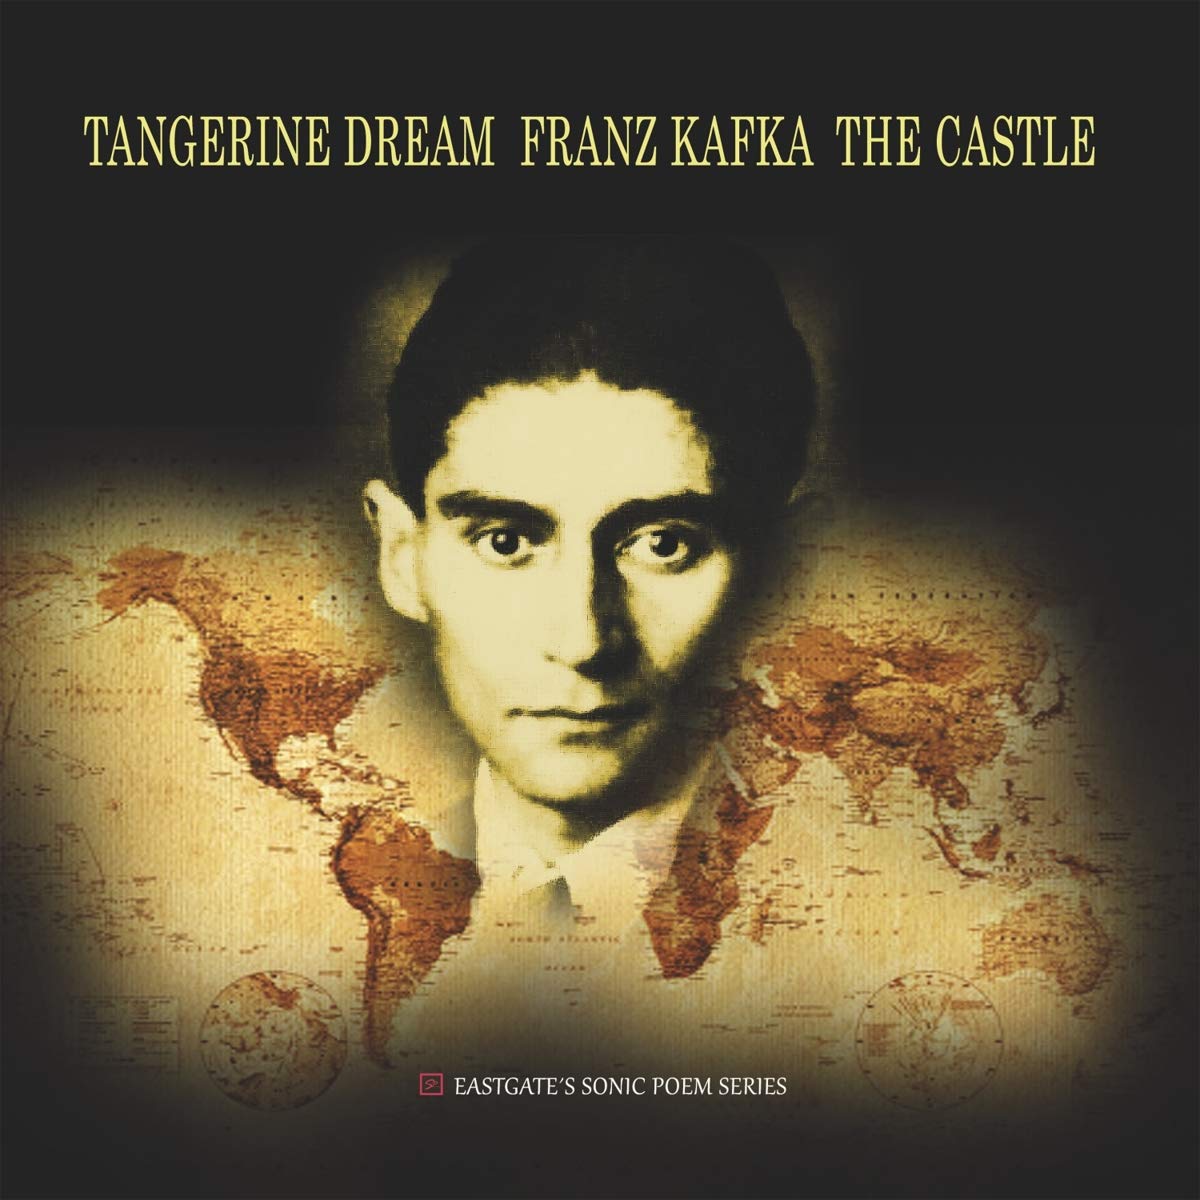 Vinile Tangerine Dream - Franz Kafka The Castle NUOVO SIGILLATO, EDIZIONE DEL 10/07/2020 SUBITO DISPONIBILE